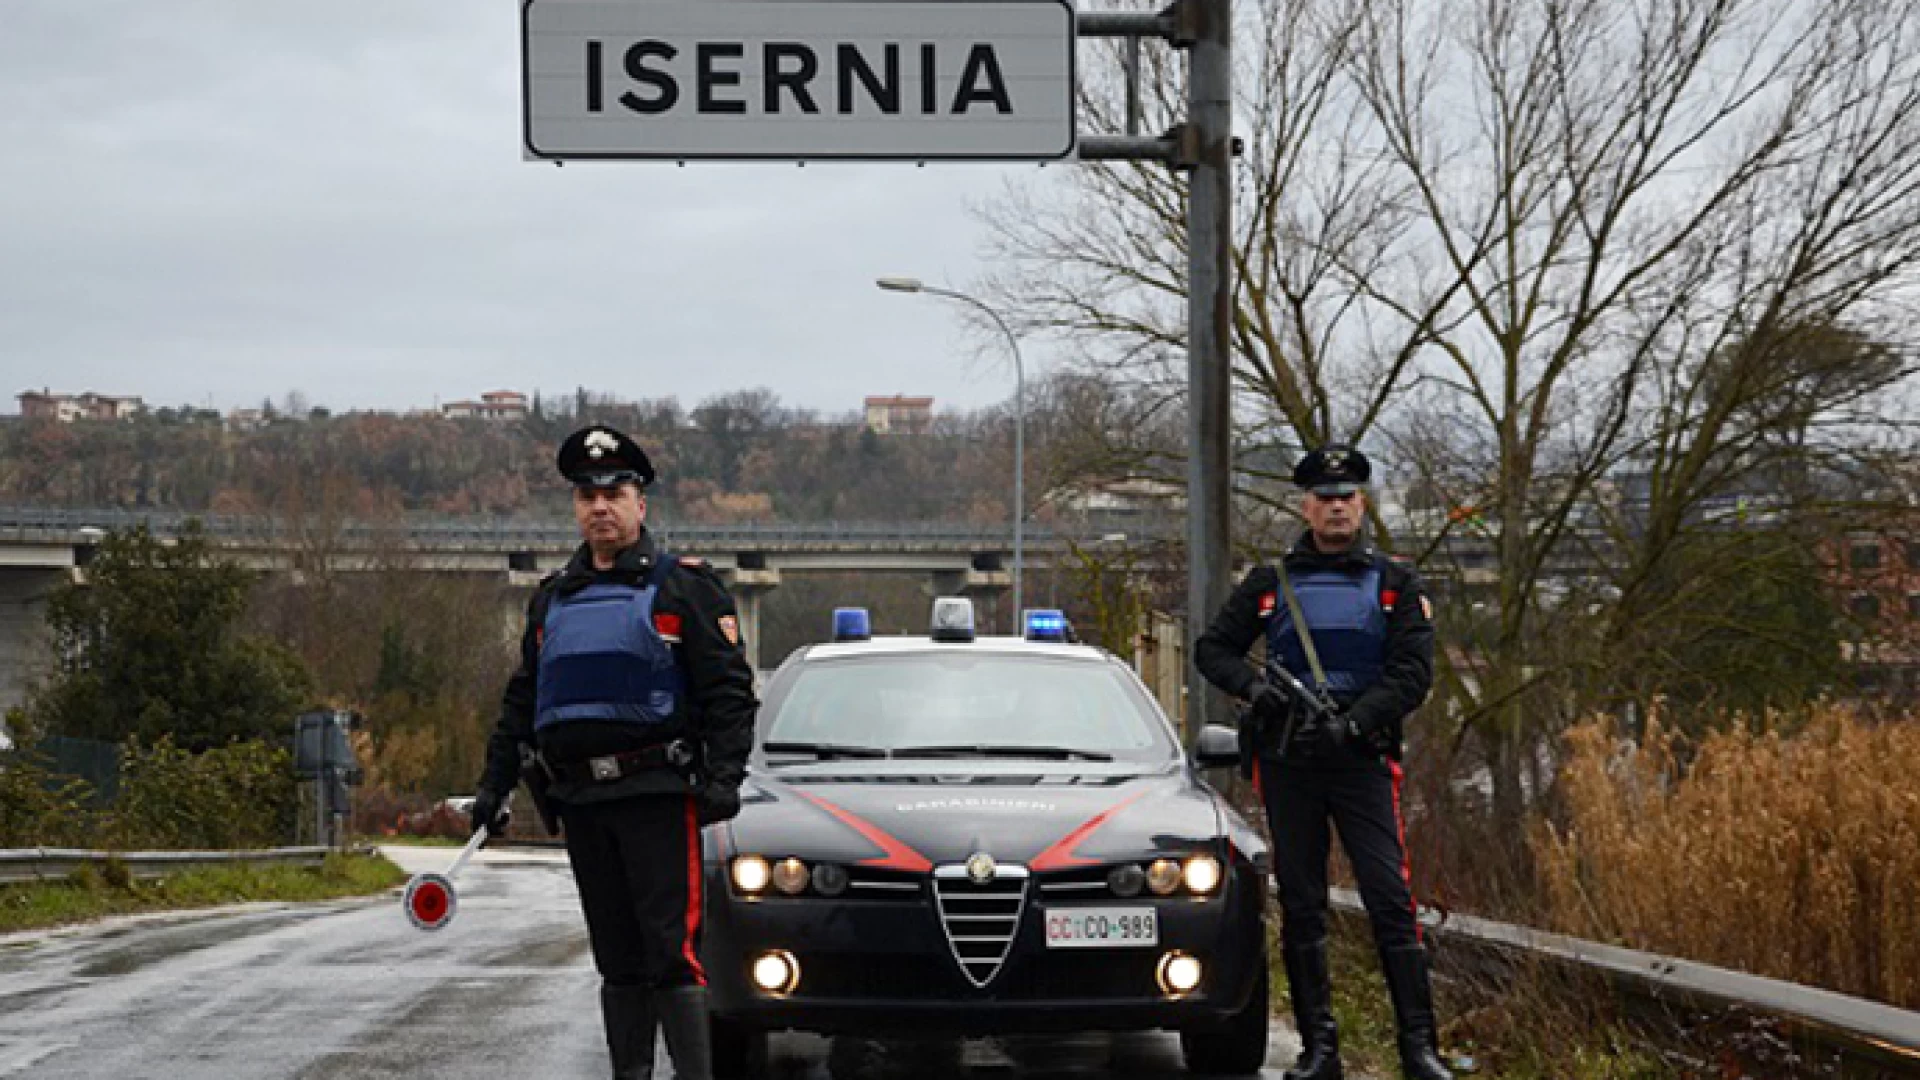 Isernia: Conducente in stato di ebrezza alcolica provoca un sinistro stradale, 40enne denunciato dai Carabinieri. Patente ritirata e auto sottoposta a sequestro.